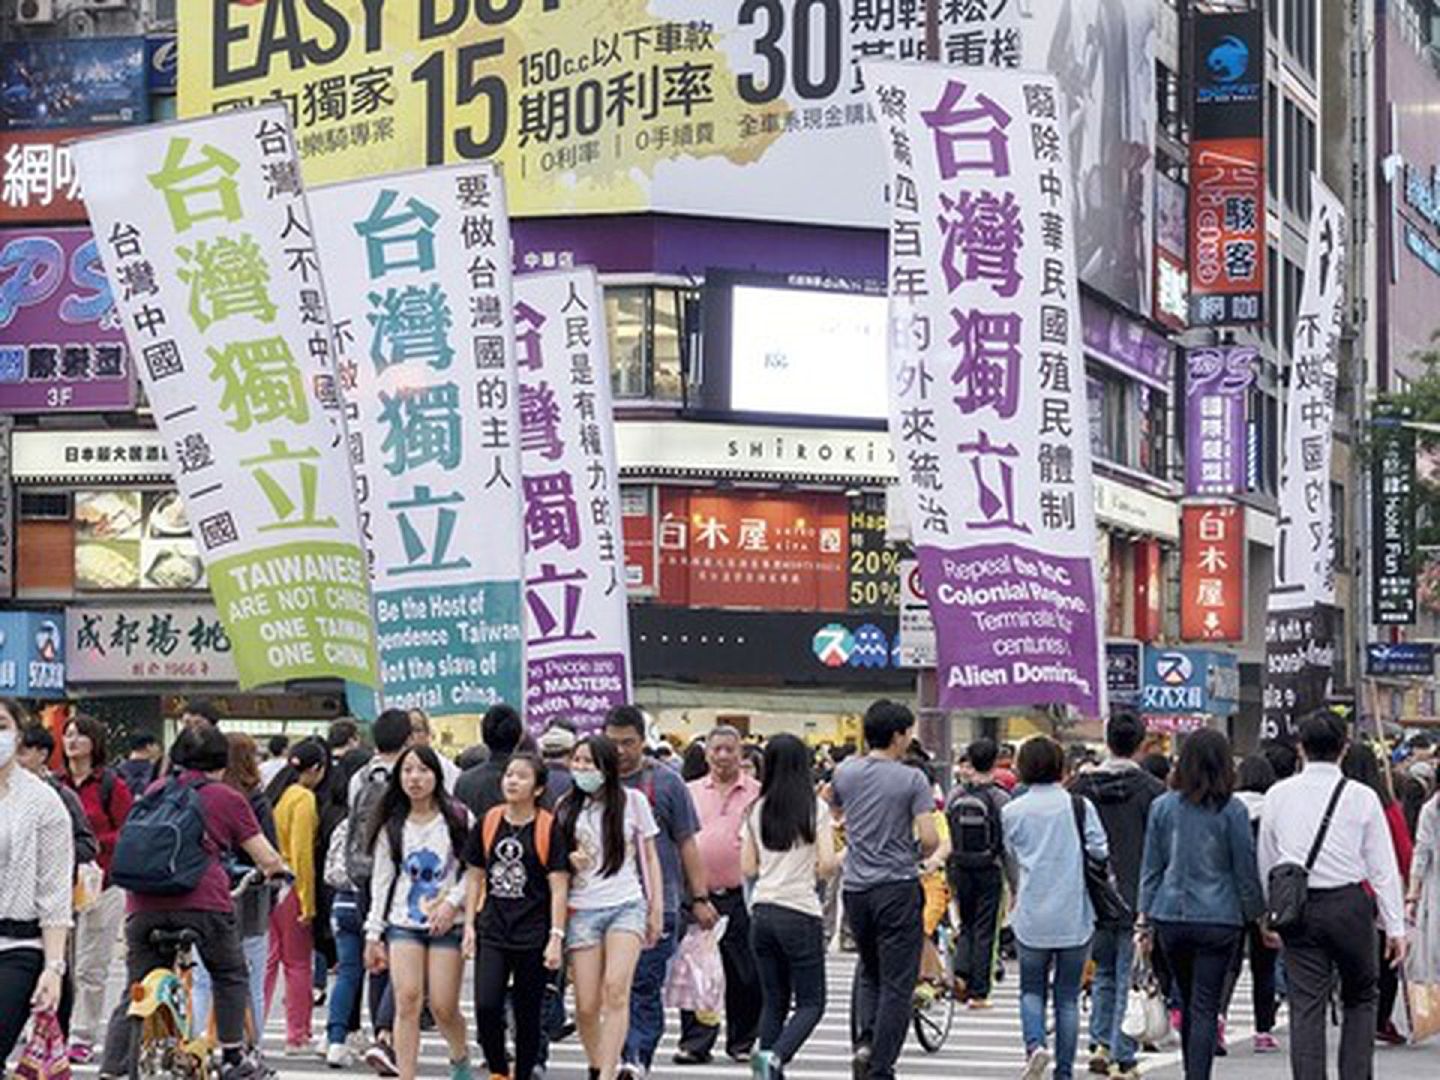 历年来许多与台独相关的公投在台湾都铩羽而归，显见台湾社会对台独与否仍存在着疑问。（Getty）